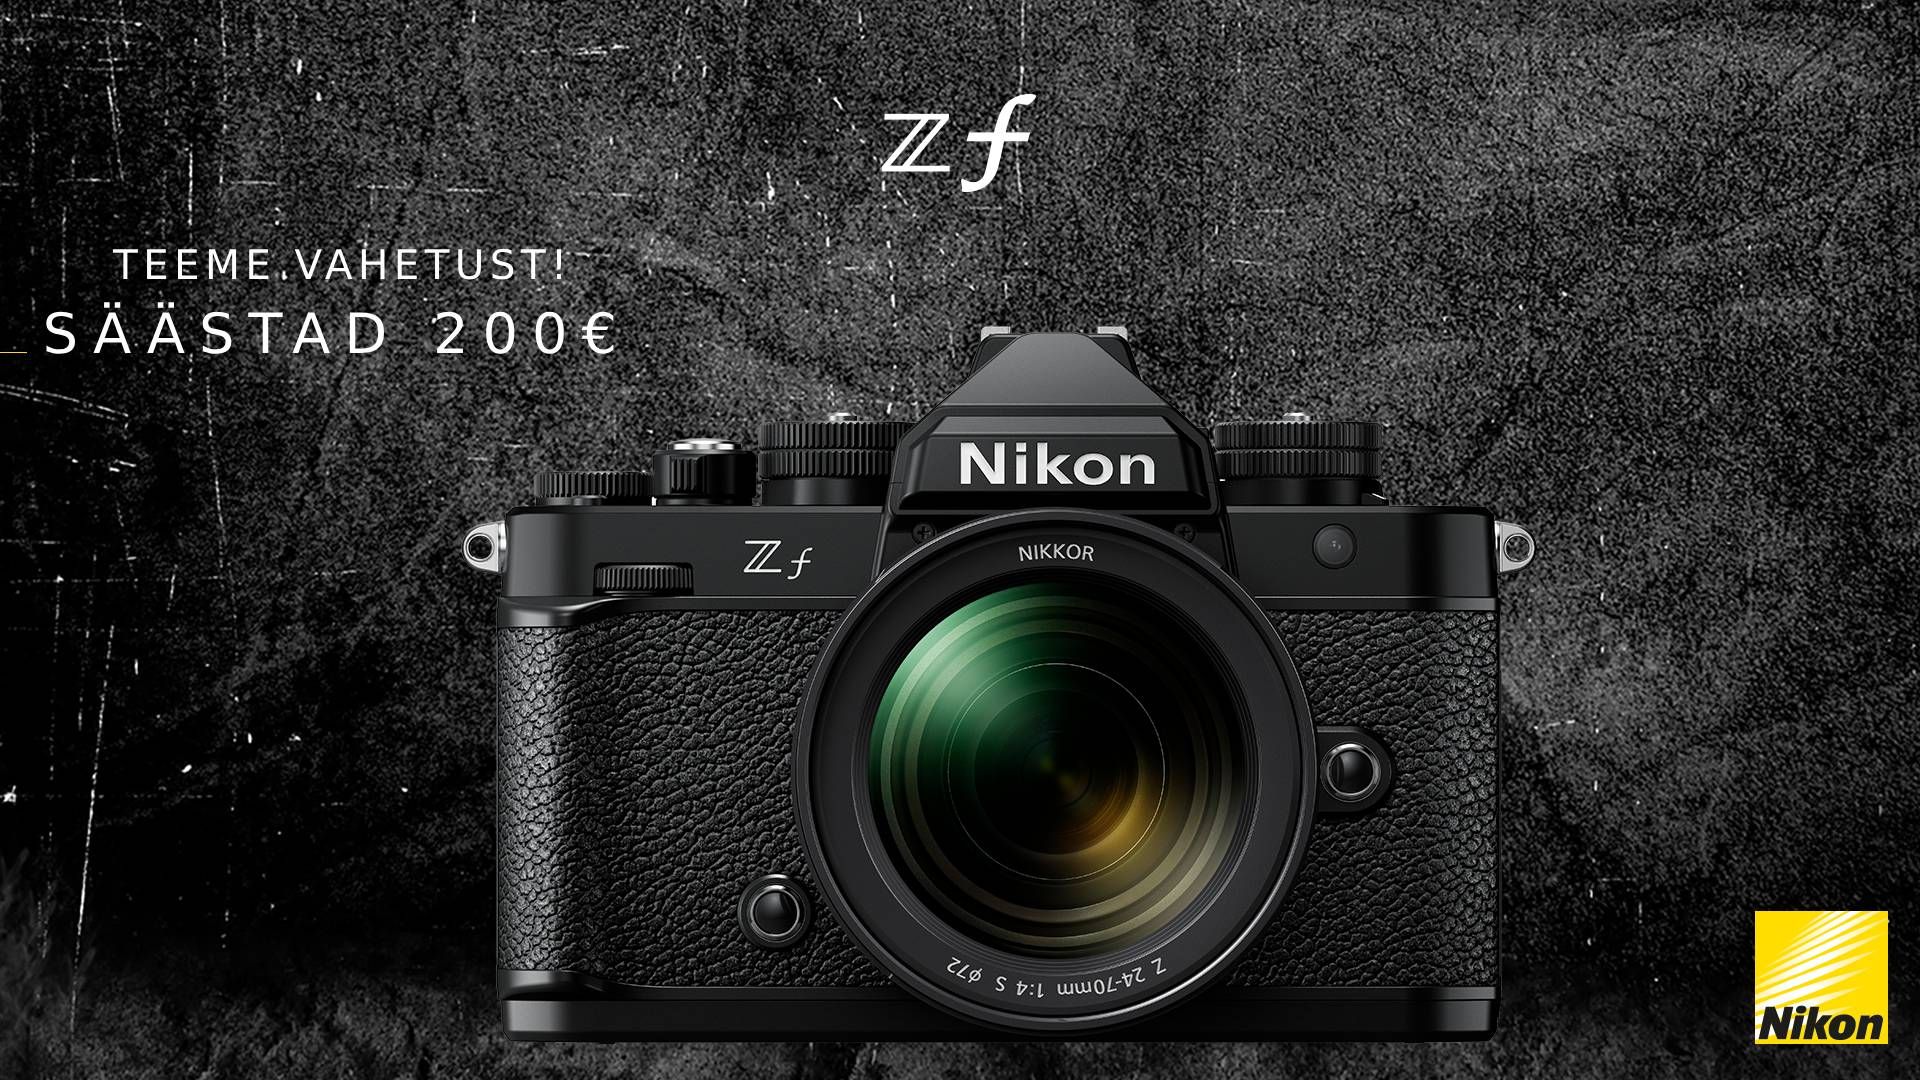 Vaheta oma vana digikaamera Nikon Z f vastu - säästad 200€